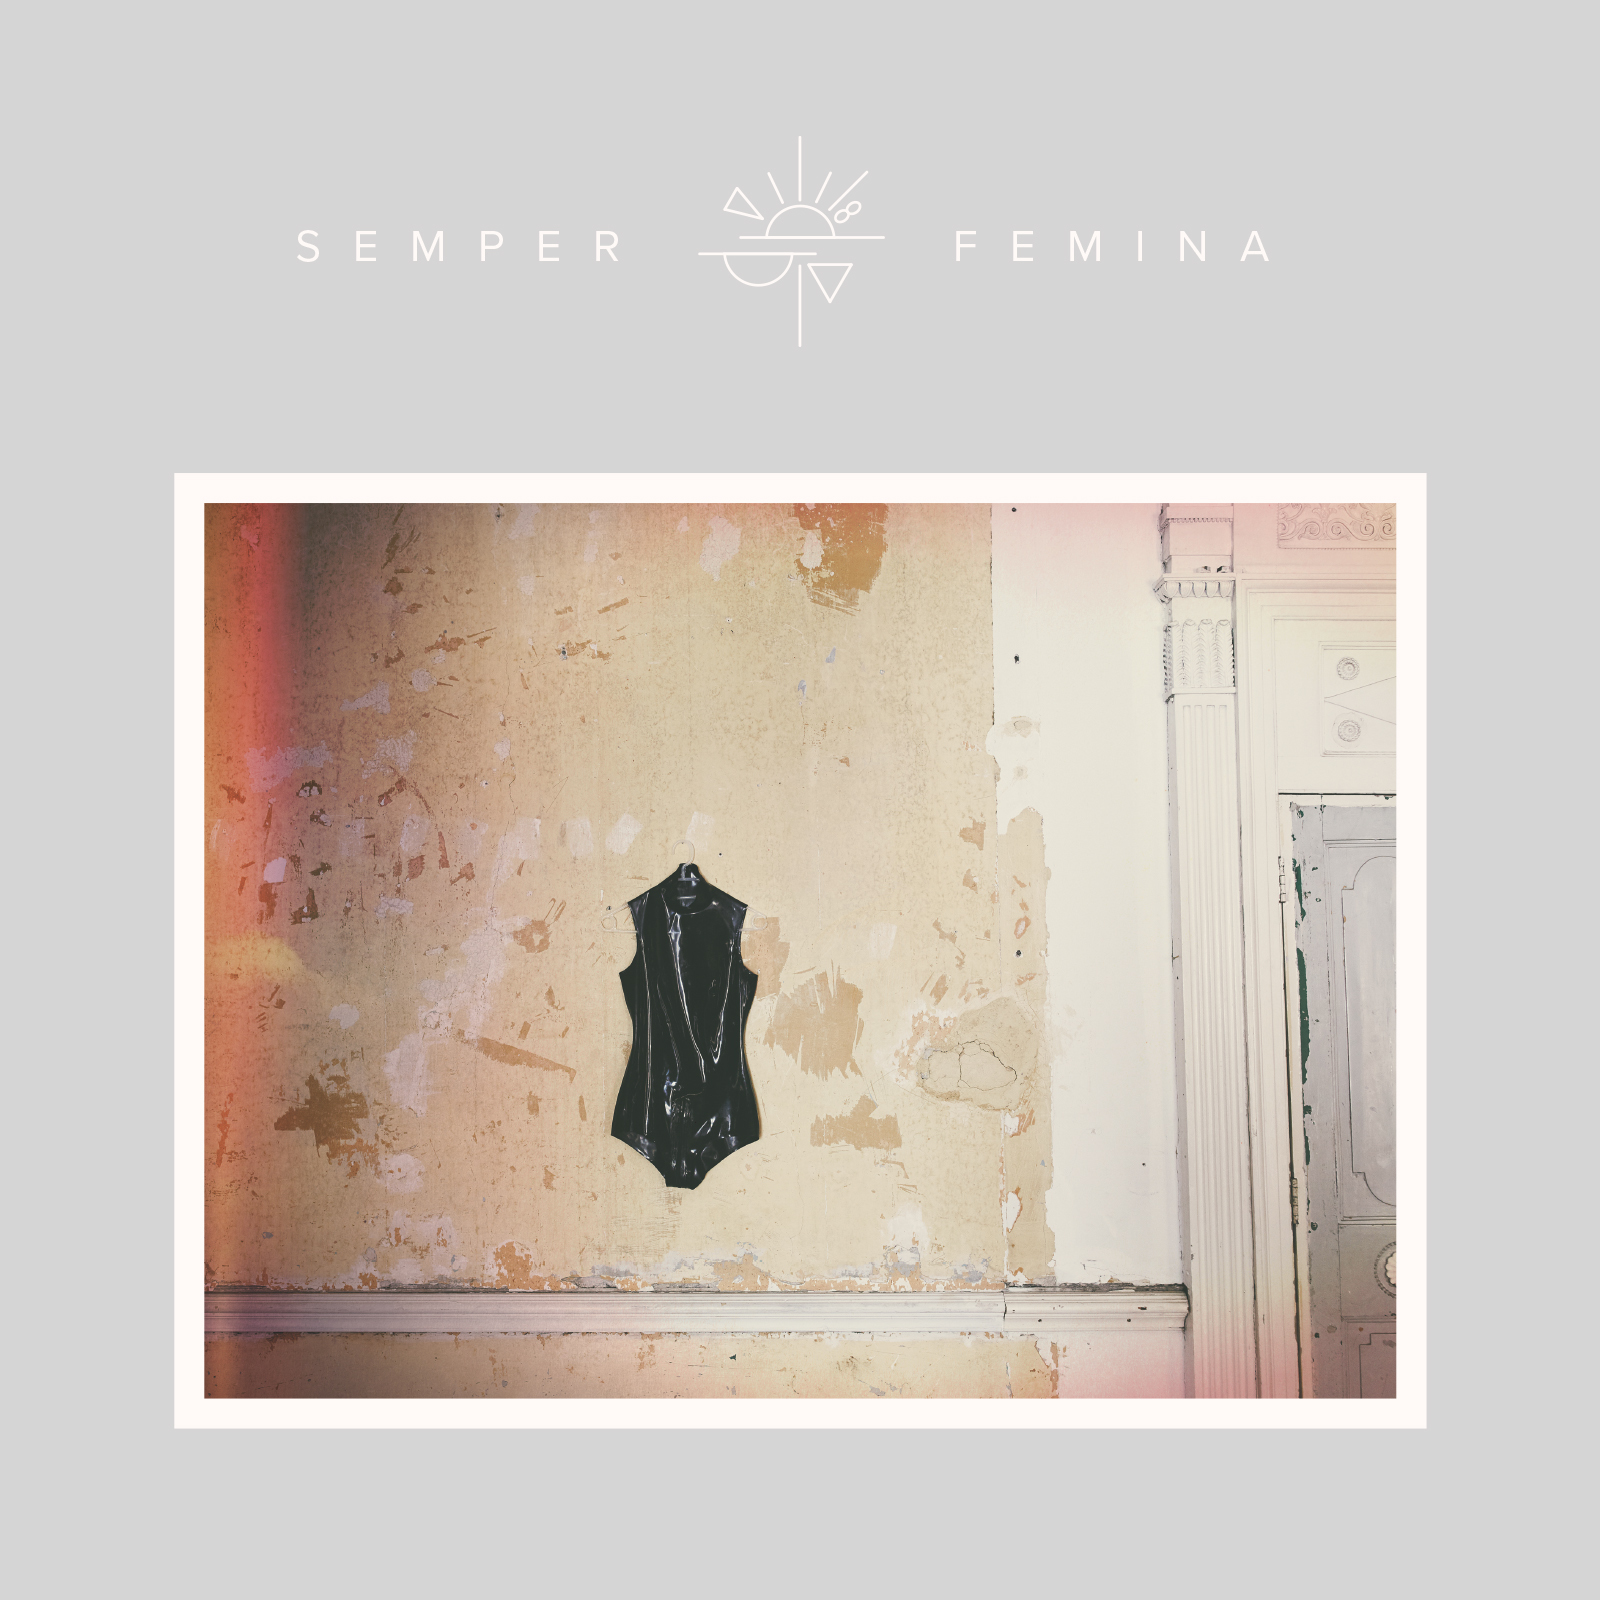 Bìa album "Semper Femina" của Laura Marling.